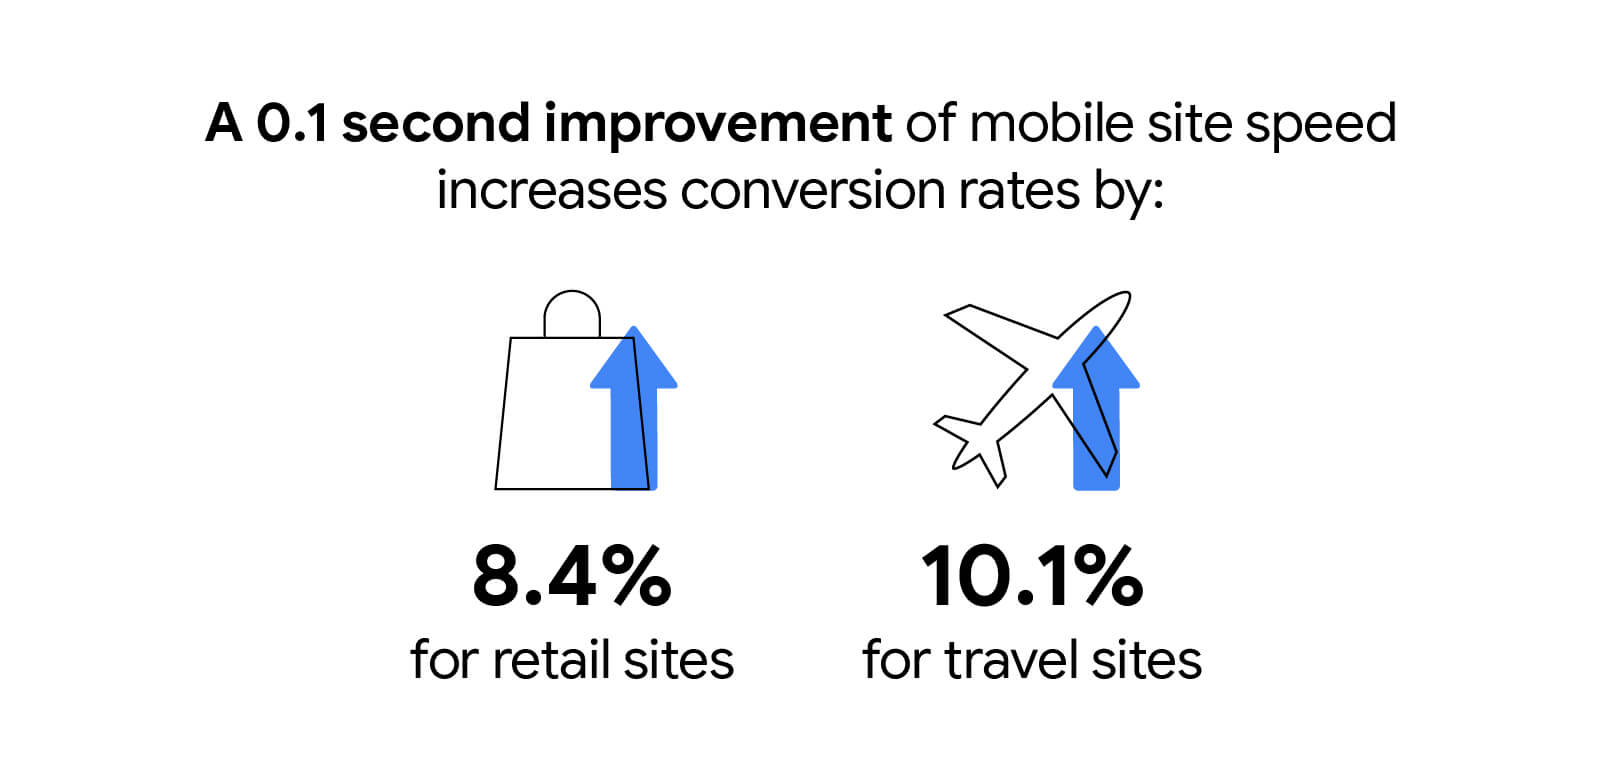 שיפור של 0.1 שנייה במהירות של אתרים לנייד מגדיל את שיעורי ההמרות ב-8.4% באתרים קמעונאיים וב-10.1% באתרי נסיעות.